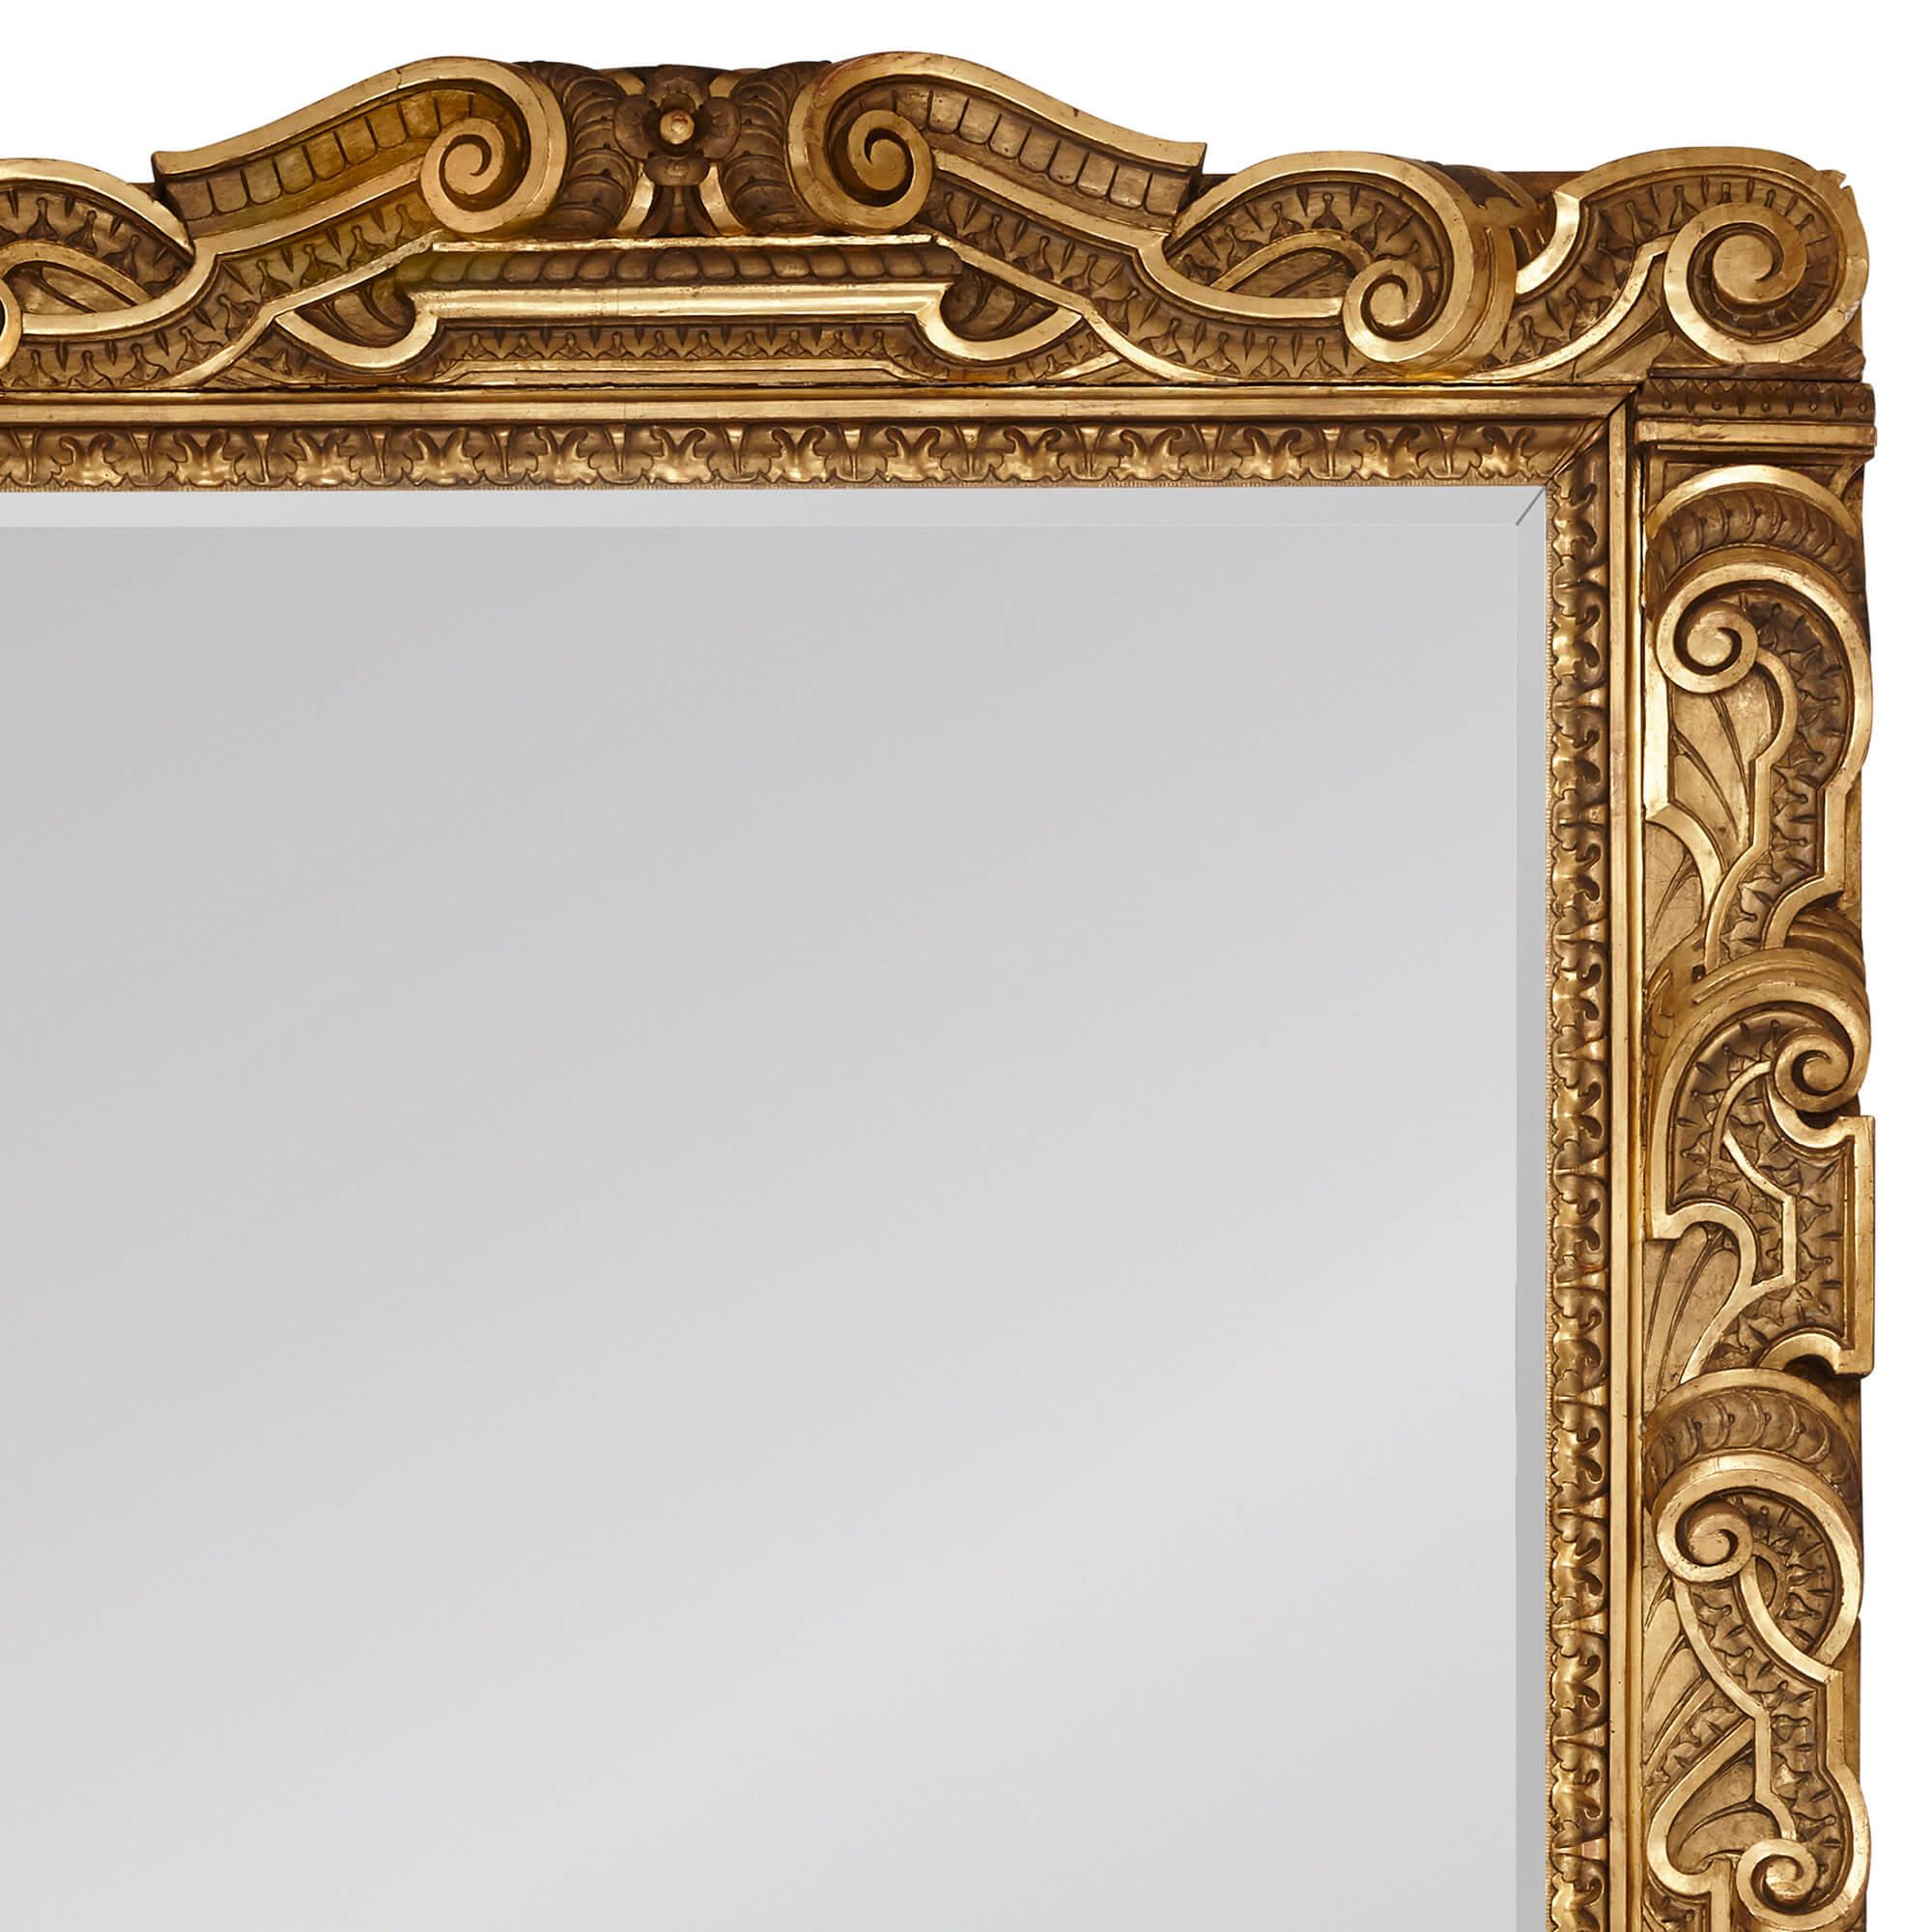 Très grand miroir italien sculpté dans le style baroque
Italie, 19e siècle
Hauteur 254 cm, largeur 168 cm, profondeur 11 cm

Ce très grand miroir mural en bois doré est conçu dans le style baroque italien. Le miroir présente un cadre rectangulaire